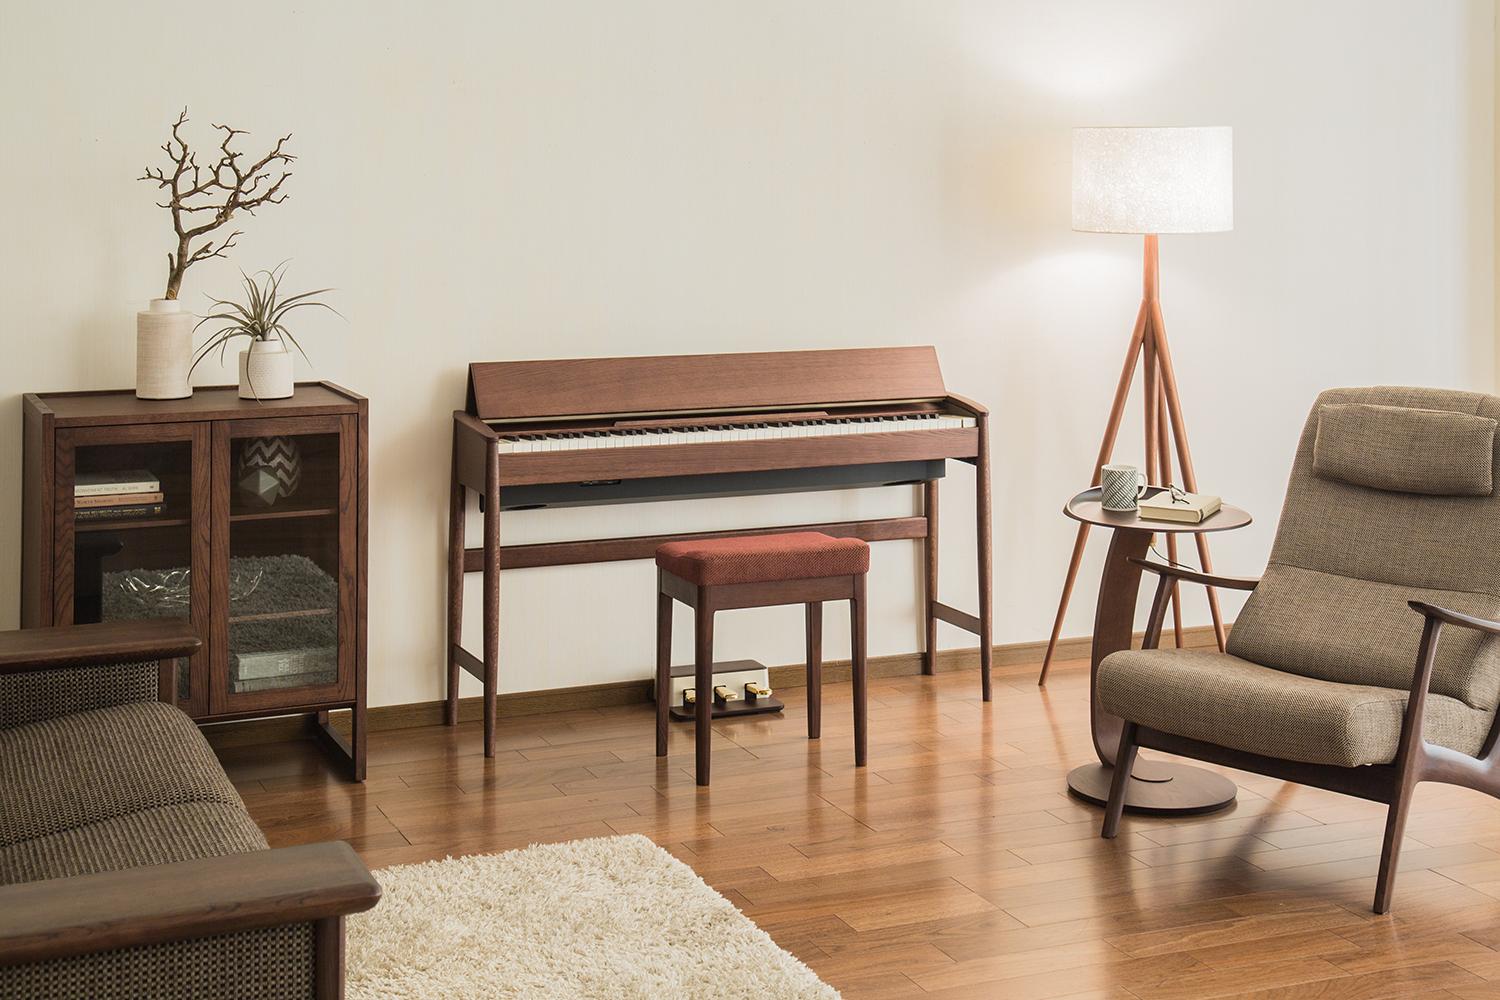 *天然木を活かした新しいデザインのピアノ「KIYOLA(きよら)」展示中 ローランド社がカリモク家具株式会社とコラボした新しいデザインの家具仕上げデジタルピアノ]]「KIYOLA（きよら） MADE IN JAPANシリーズ『KF-10』」発売中。]]2015 年度「グッドデザイン賞」を受賞している […]